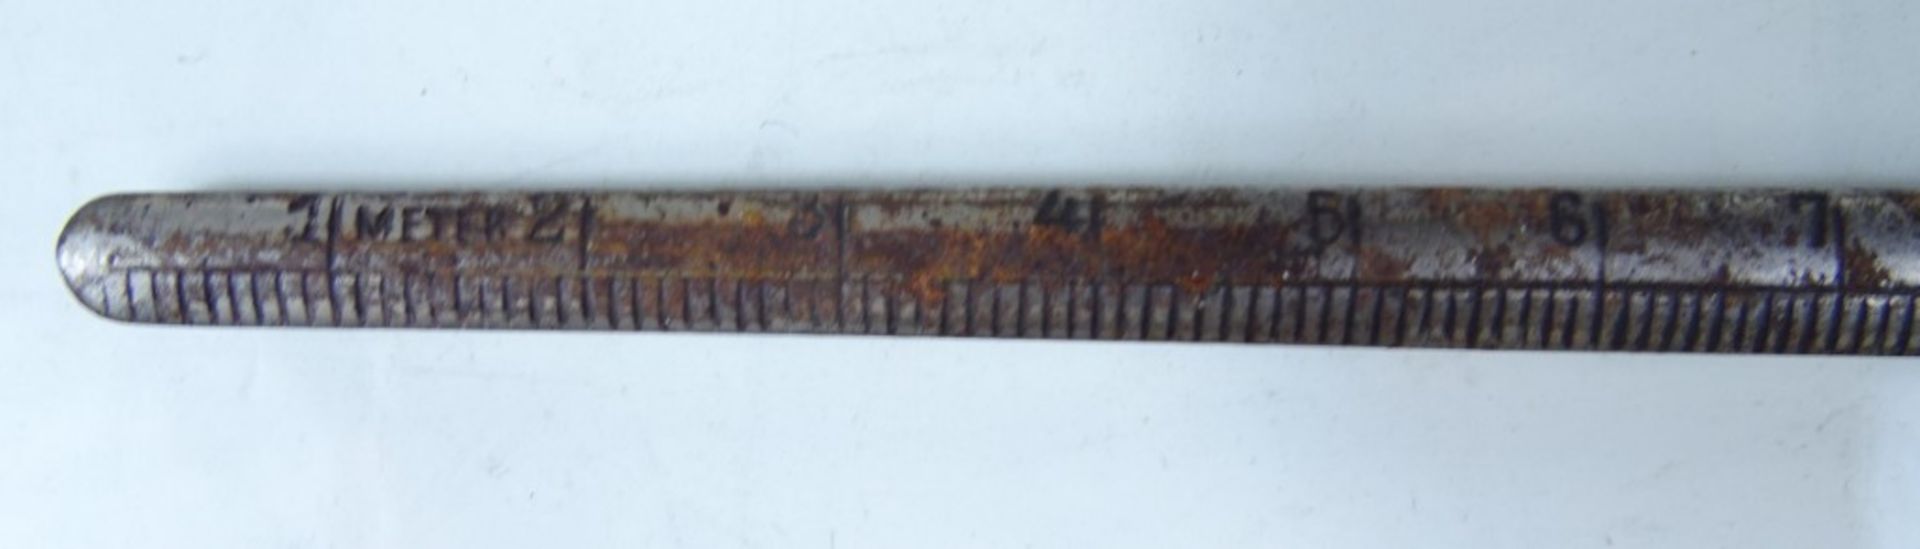 Brieföffner mit Maßstab, Metall, gepunzt "Rheinland", L. 25,5 cm - Bild 3 aus 5